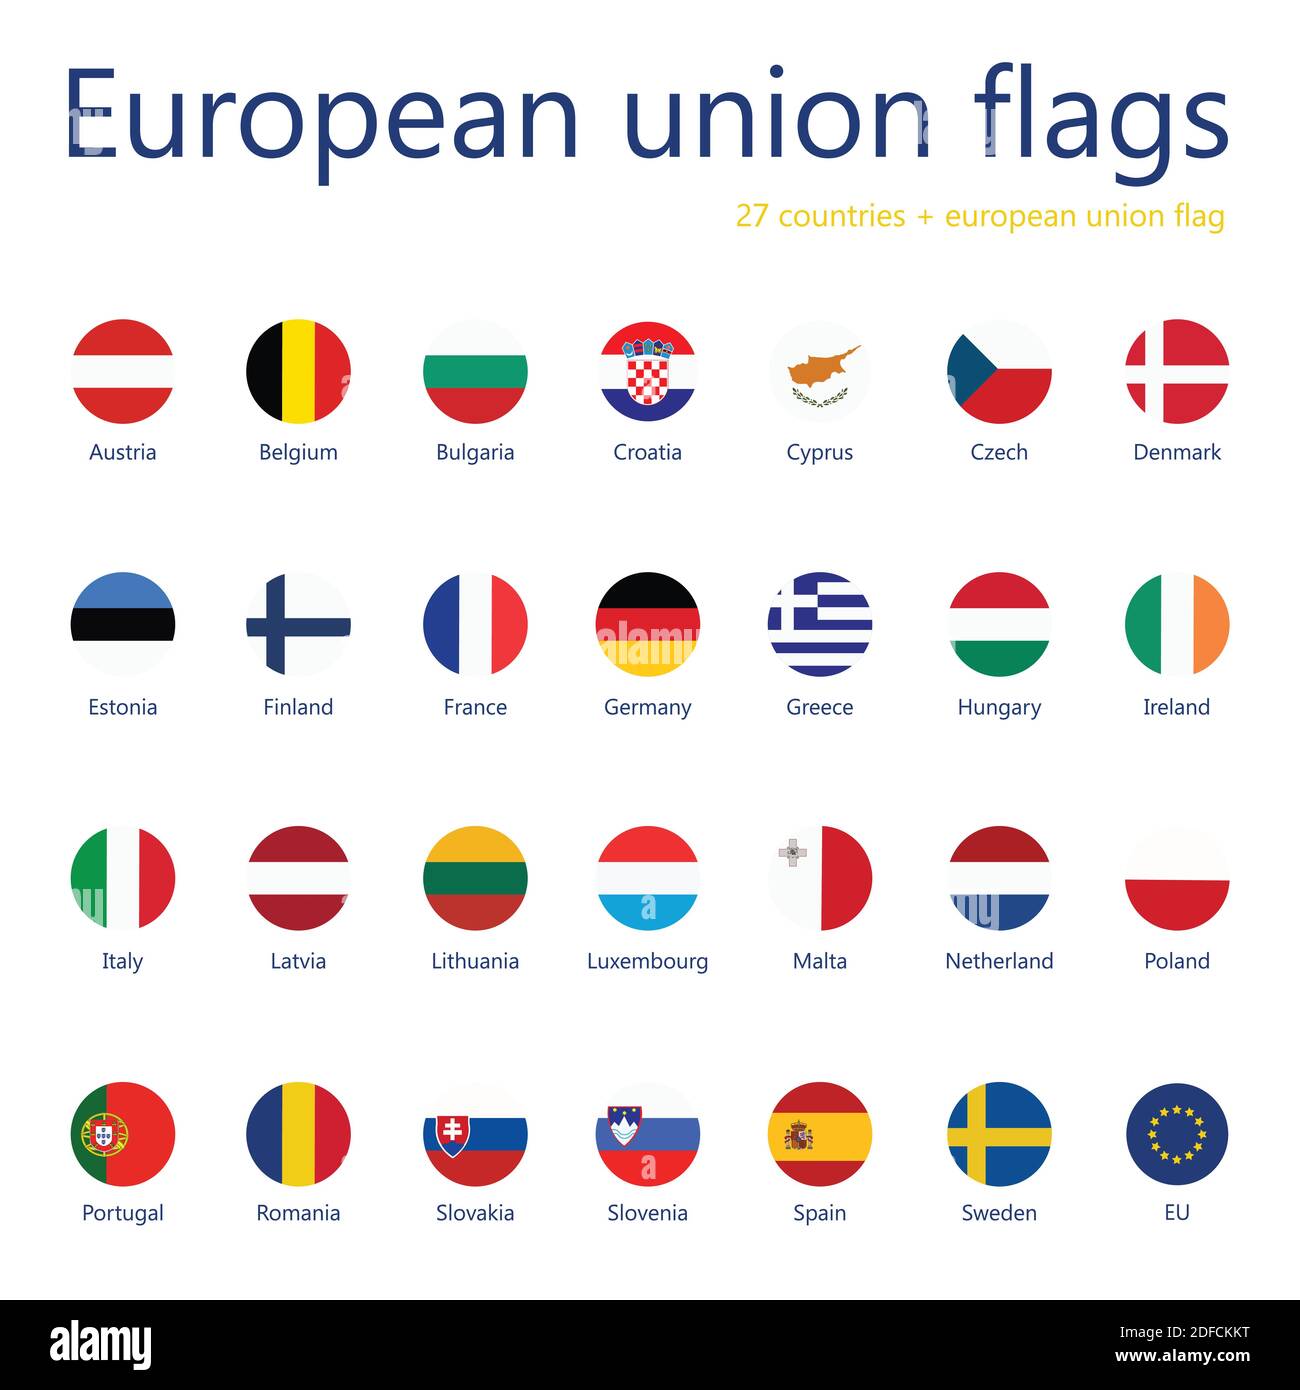 Vektor-Illustration Set von europäischen Union Flaggen mit Namen. 27 Flaggen + eu-Flagge. Stock Vektor